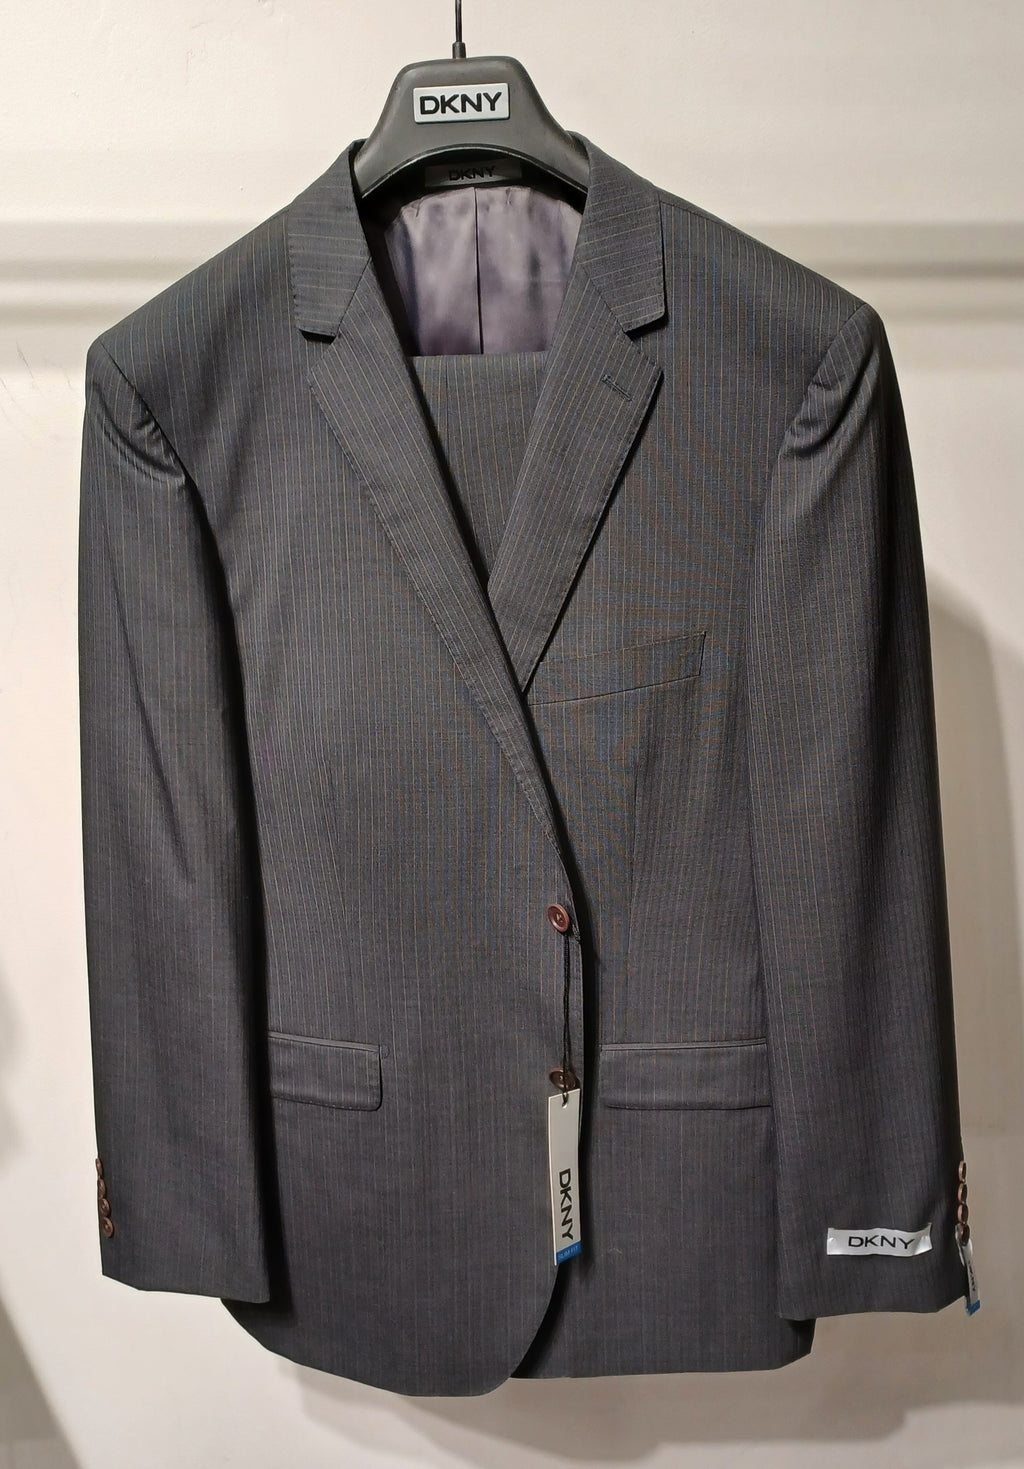 DKNY 2pc Regular Fit Suit #149 ONLY SIZE 40R, 46R, 44L (FINAL SALE)